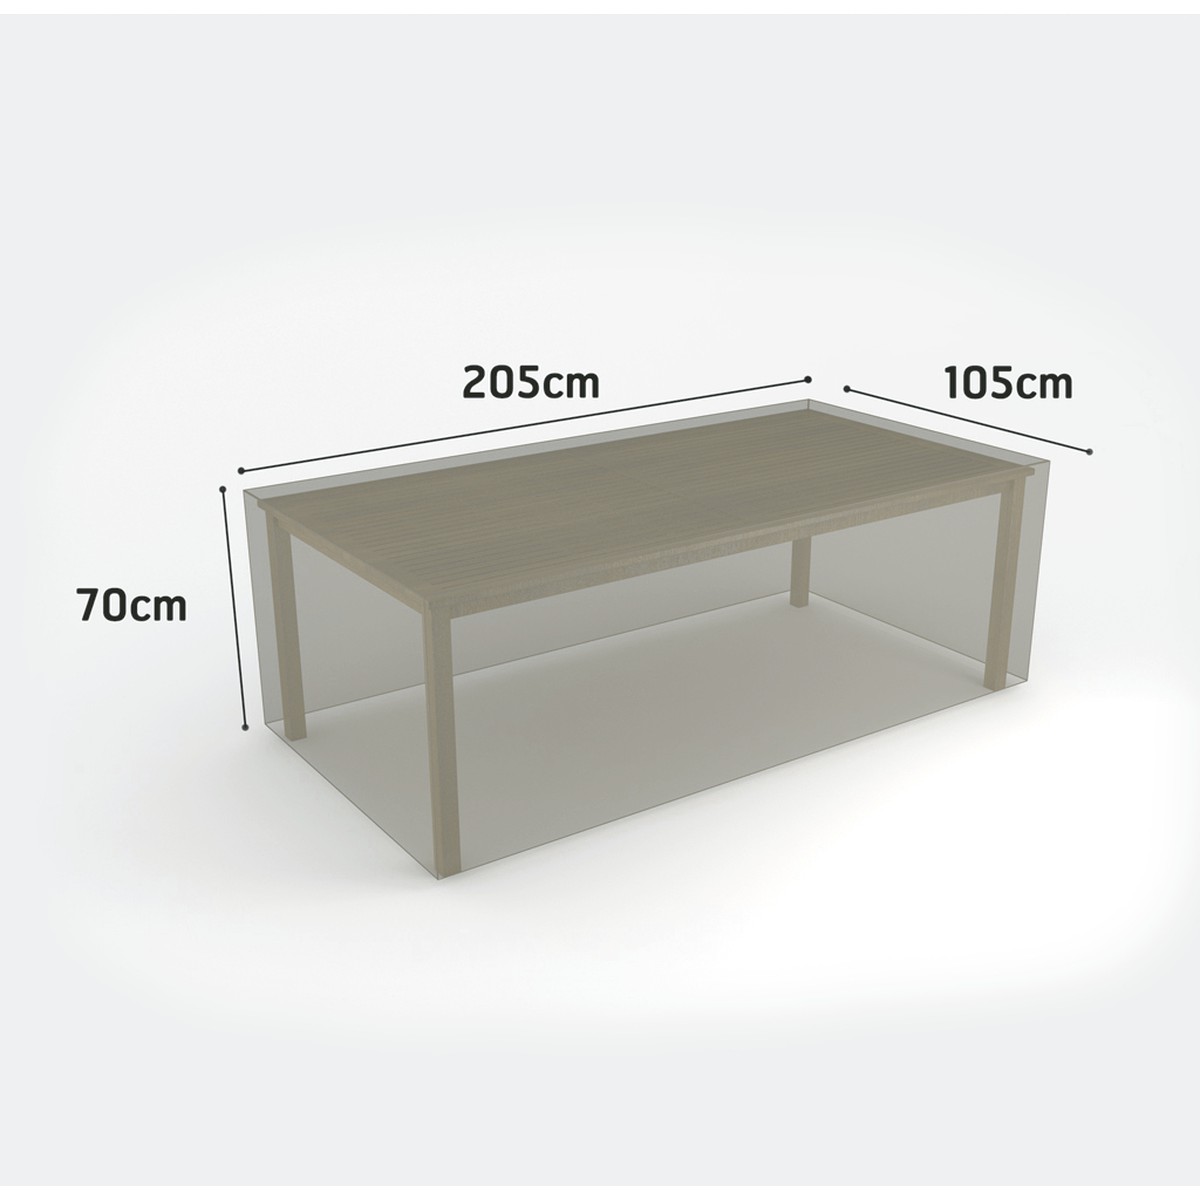 Housse de protection pour table rectangulaire